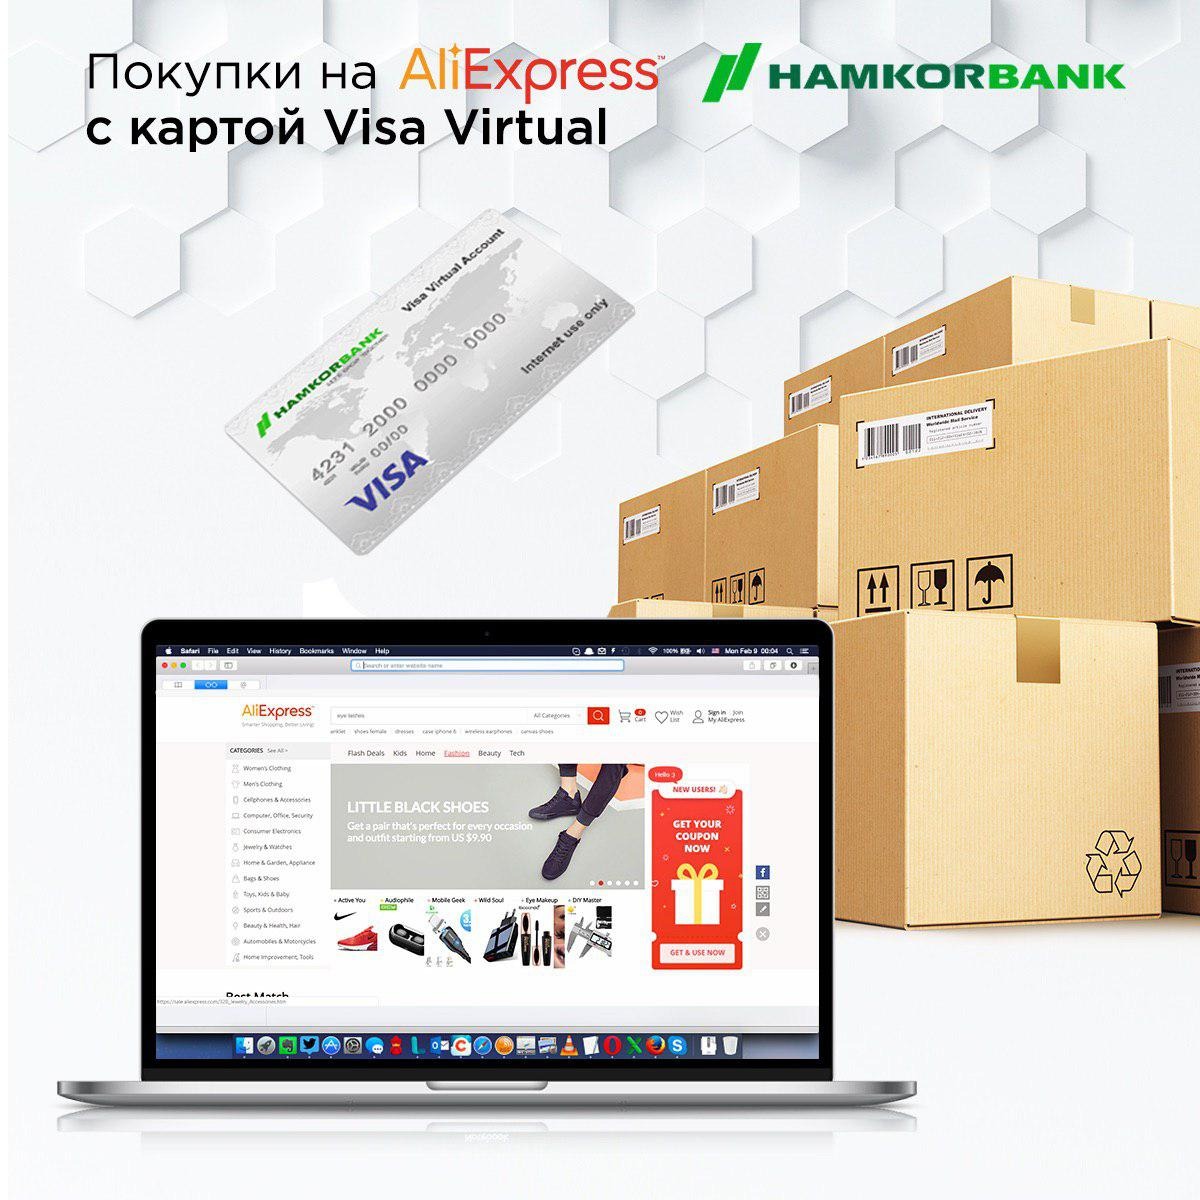 Hamkorbank разработал оптимальное решение для интернет-шоппинга 